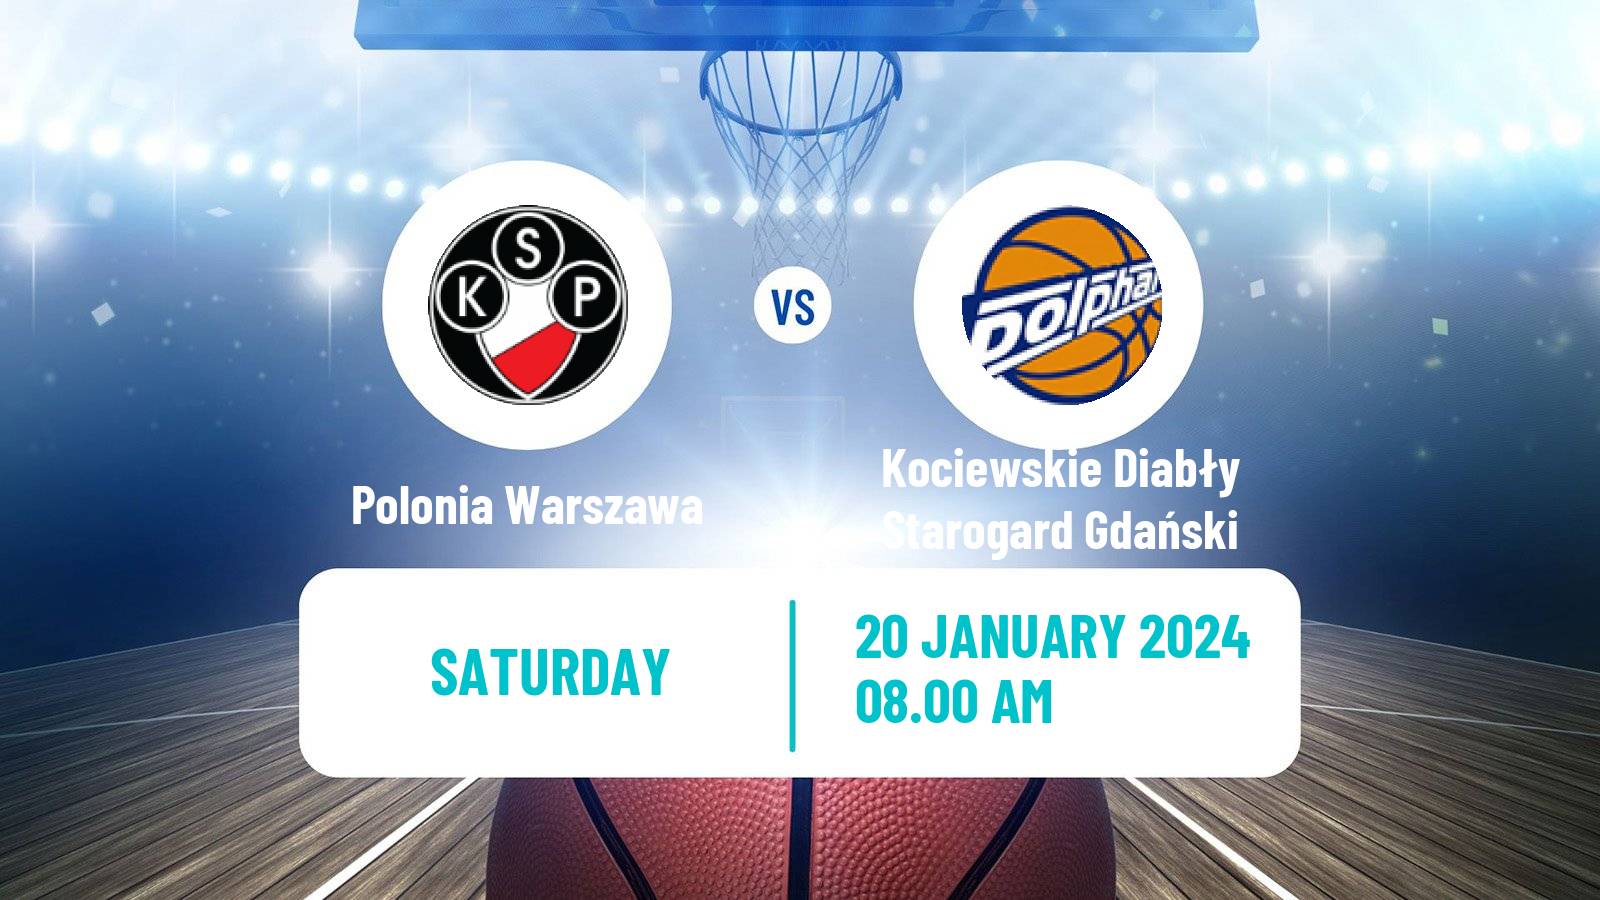 Basketball Polish 1 Liga Basketball Polonia Warszawa - Kociewskie Diabły Starogard Gdański